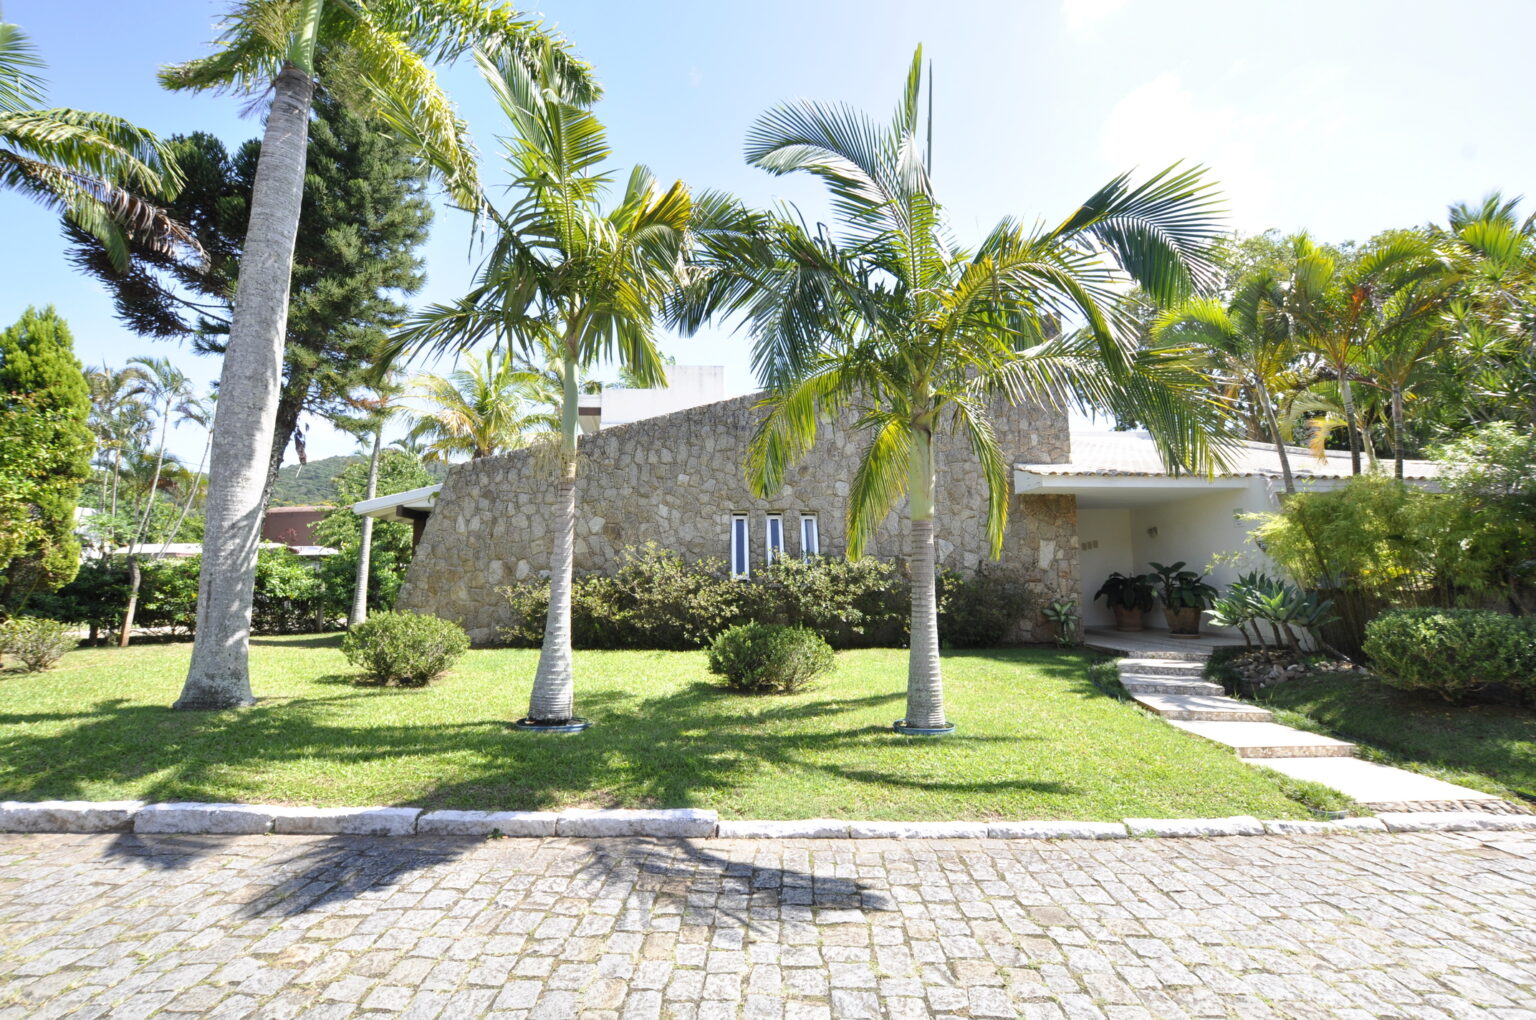 Casa em Condomínio Fechado na Lagoa da Conceição: com um terreno exclusivo de 1.980m² repleto de paisagismo exuberante.